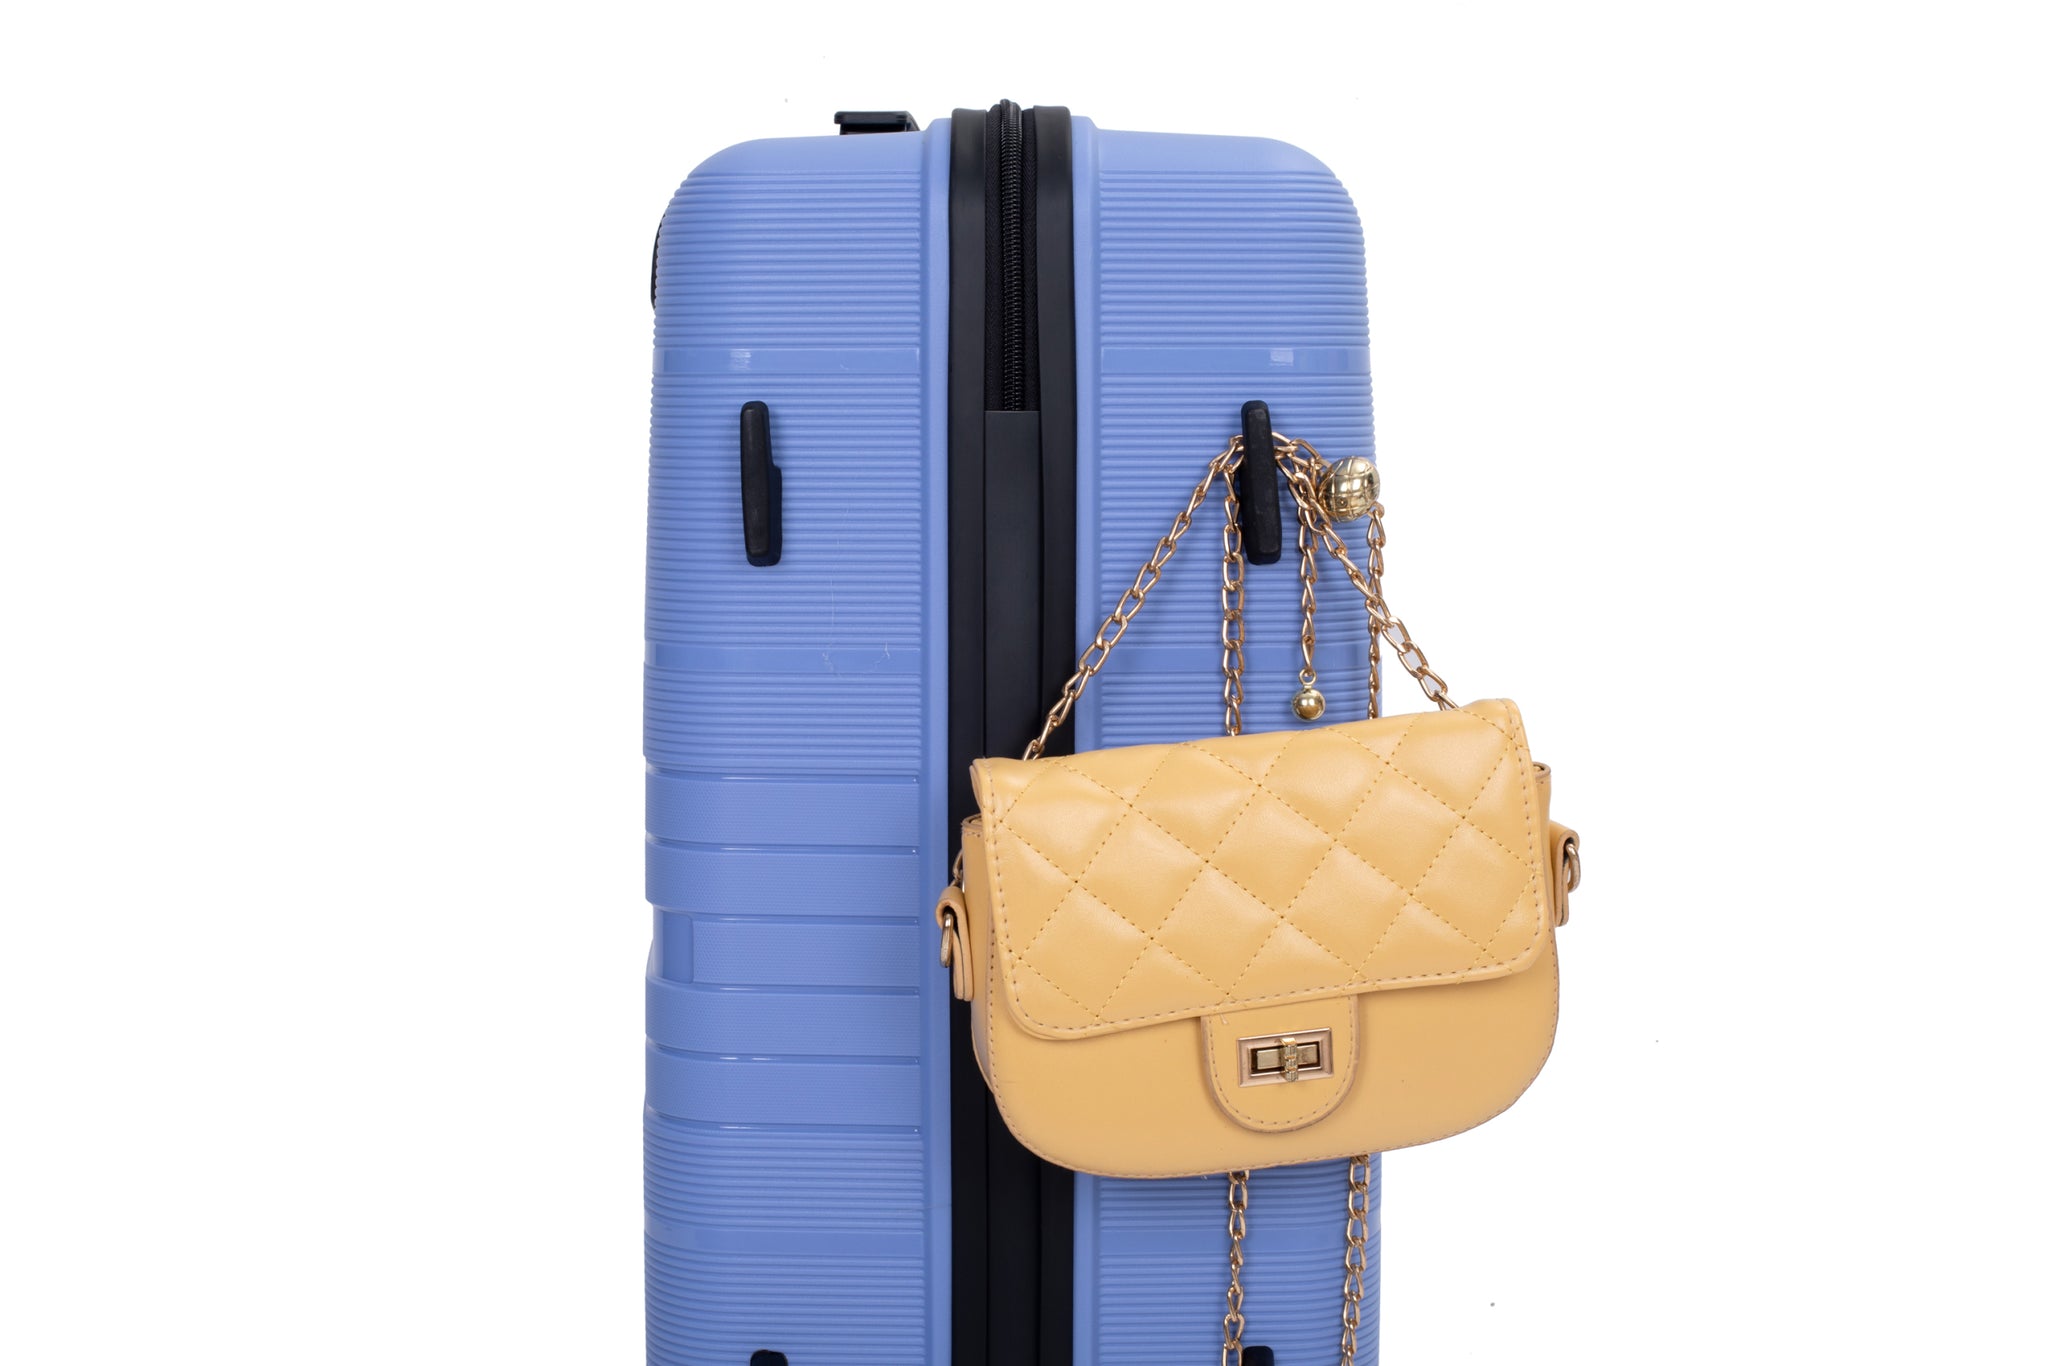 Hardshell Suitcase Double Spinner Wheels PP Luggage purplish blue-polypropylene